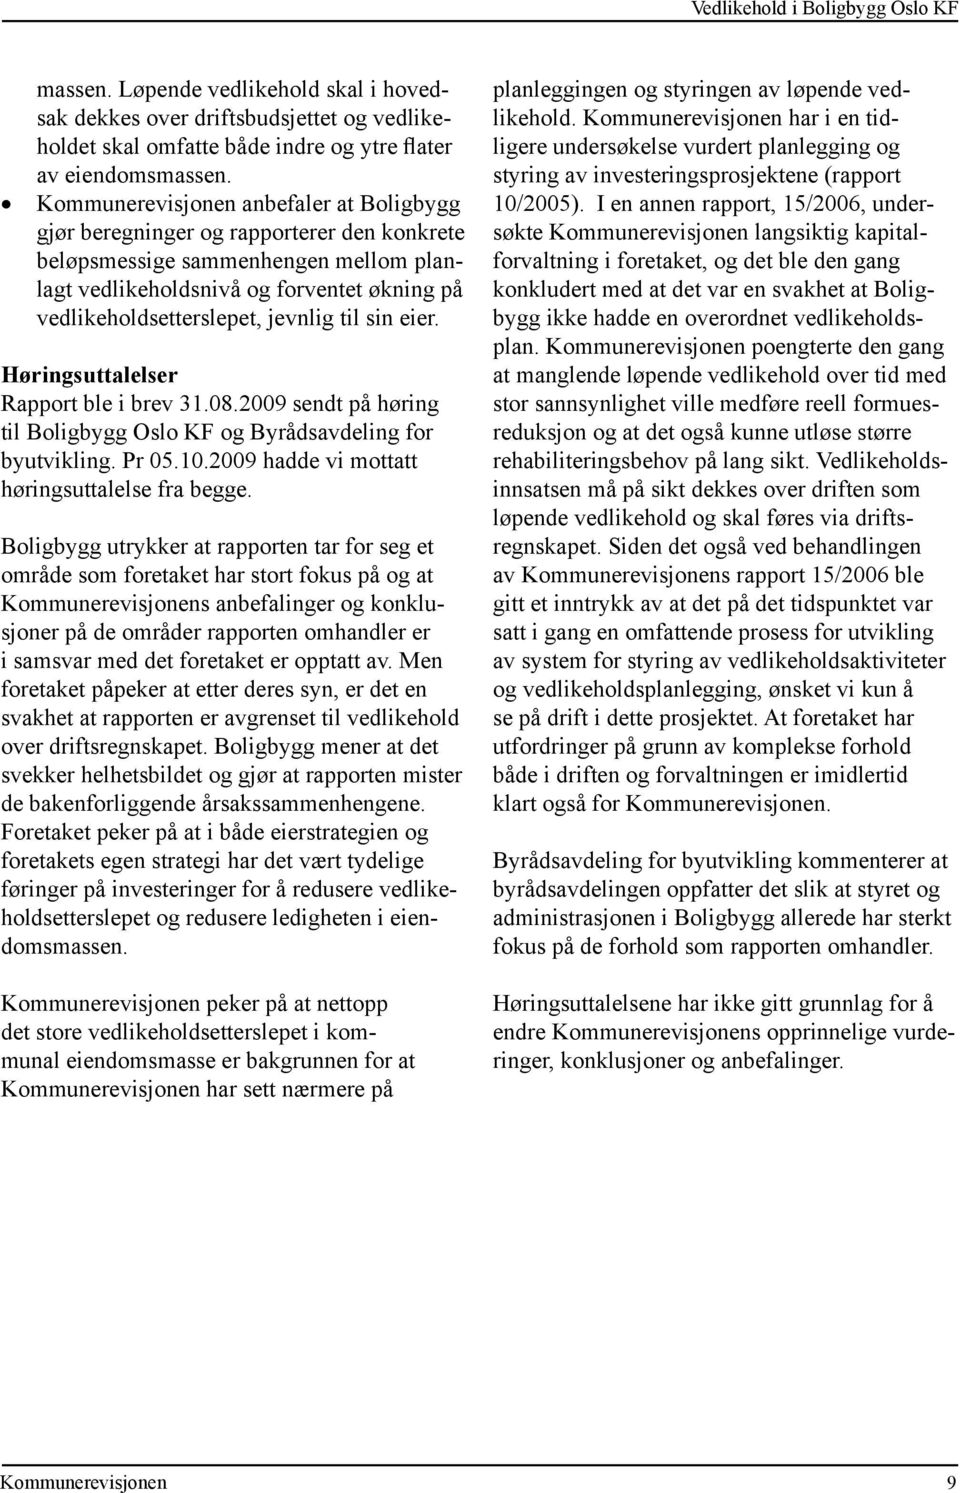 Høringsuttalelser Rapport ble i brev 31.08.2009 sendt på høring til Boligbygg Oslo KF og Byrådsavdeling for byutvikling. Pr 05.10.2009 hadde vi mottatt høringsuttalelse fra begge.